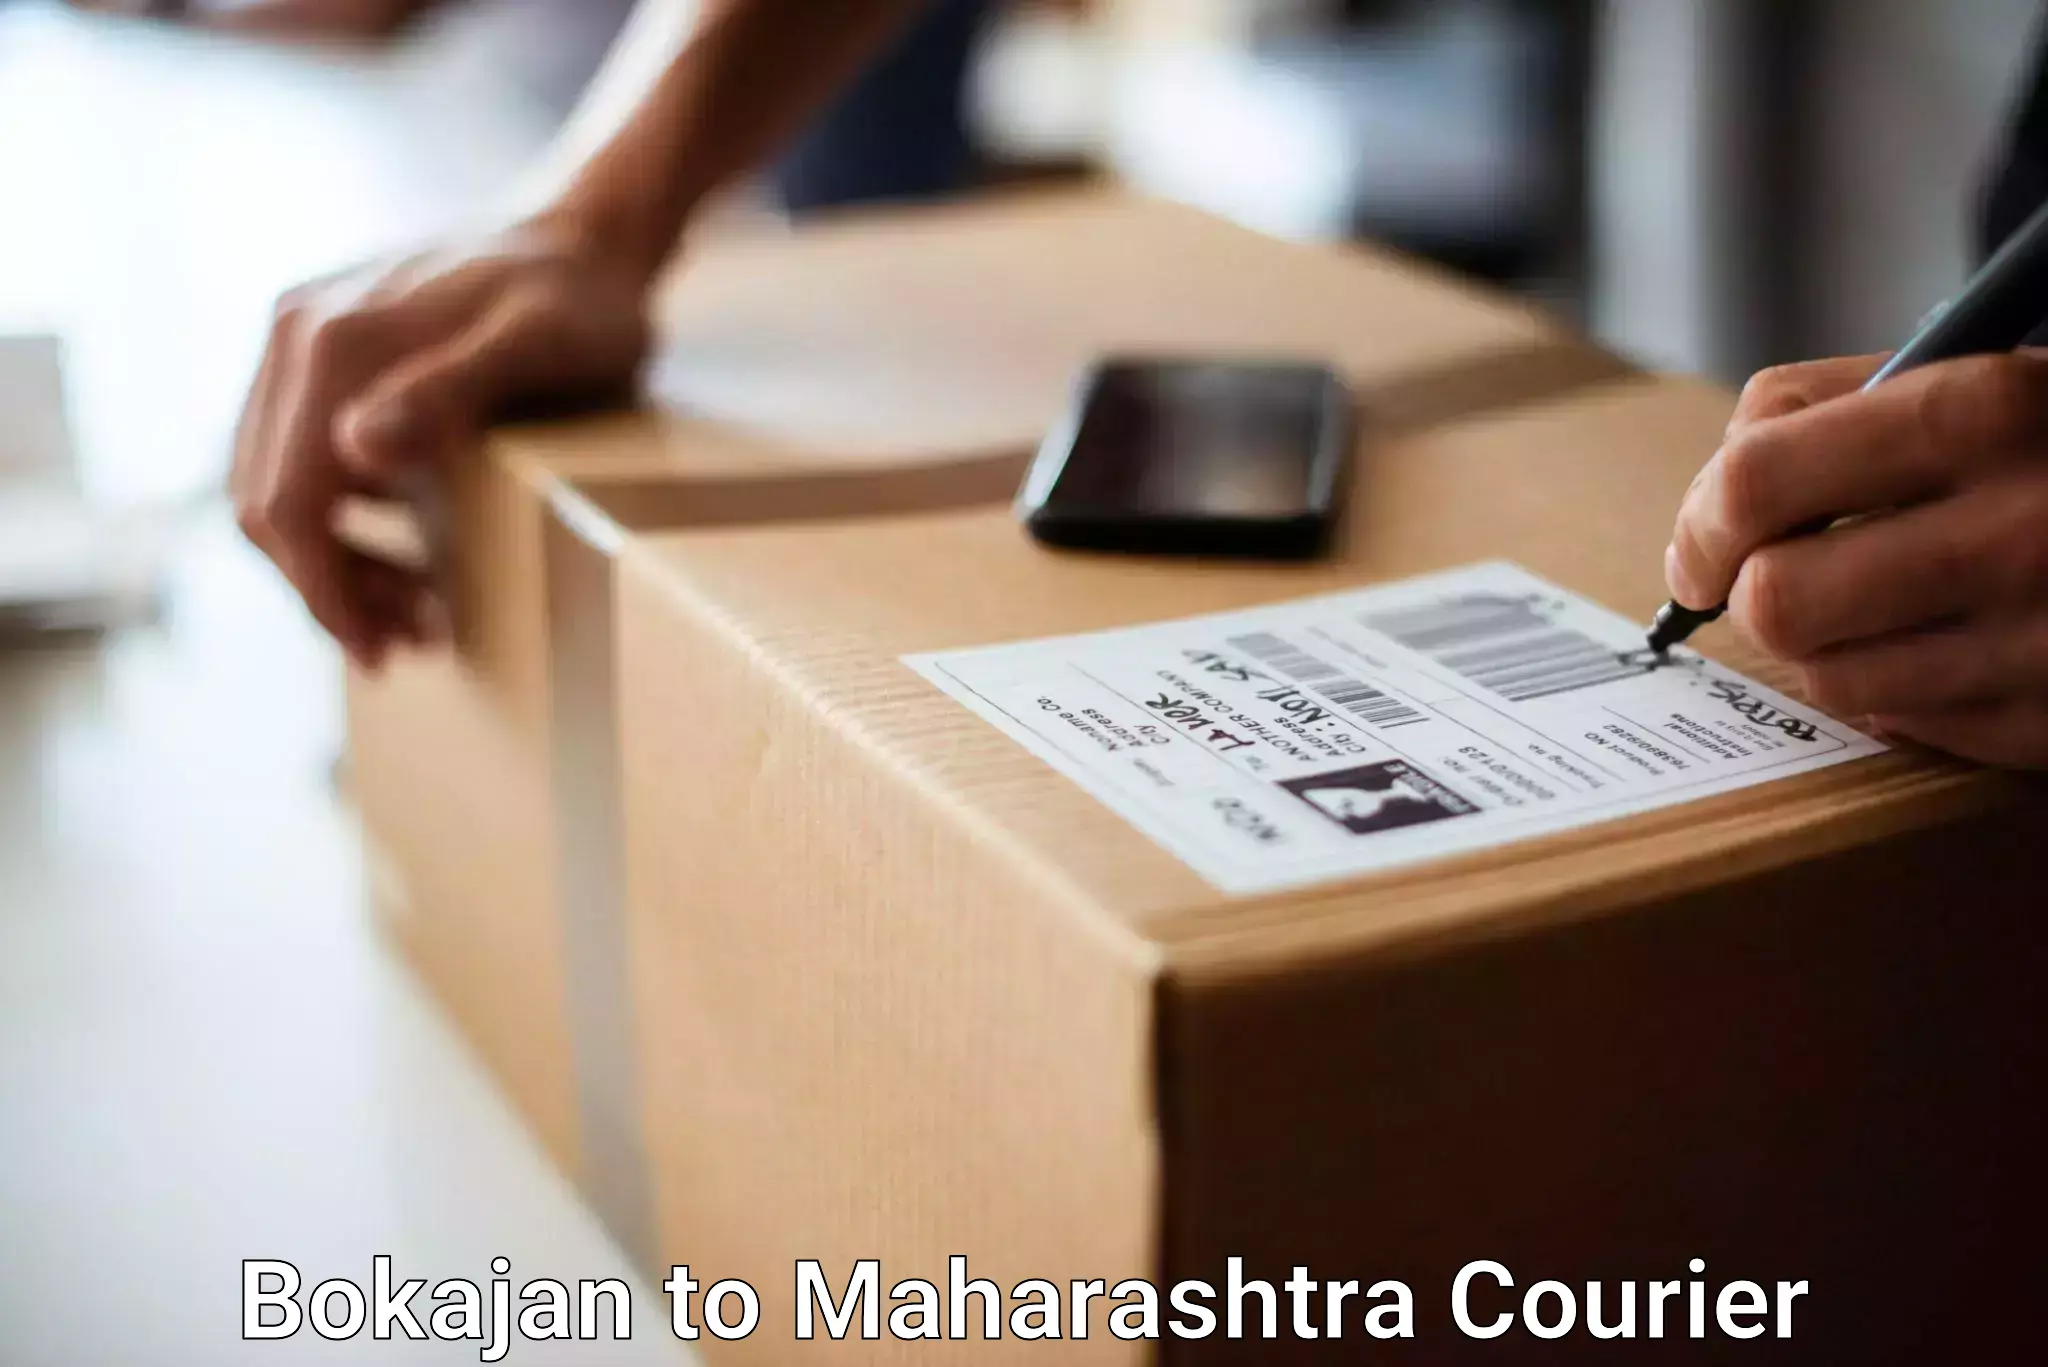 Urgent luggage shipment Bokajan to Pune